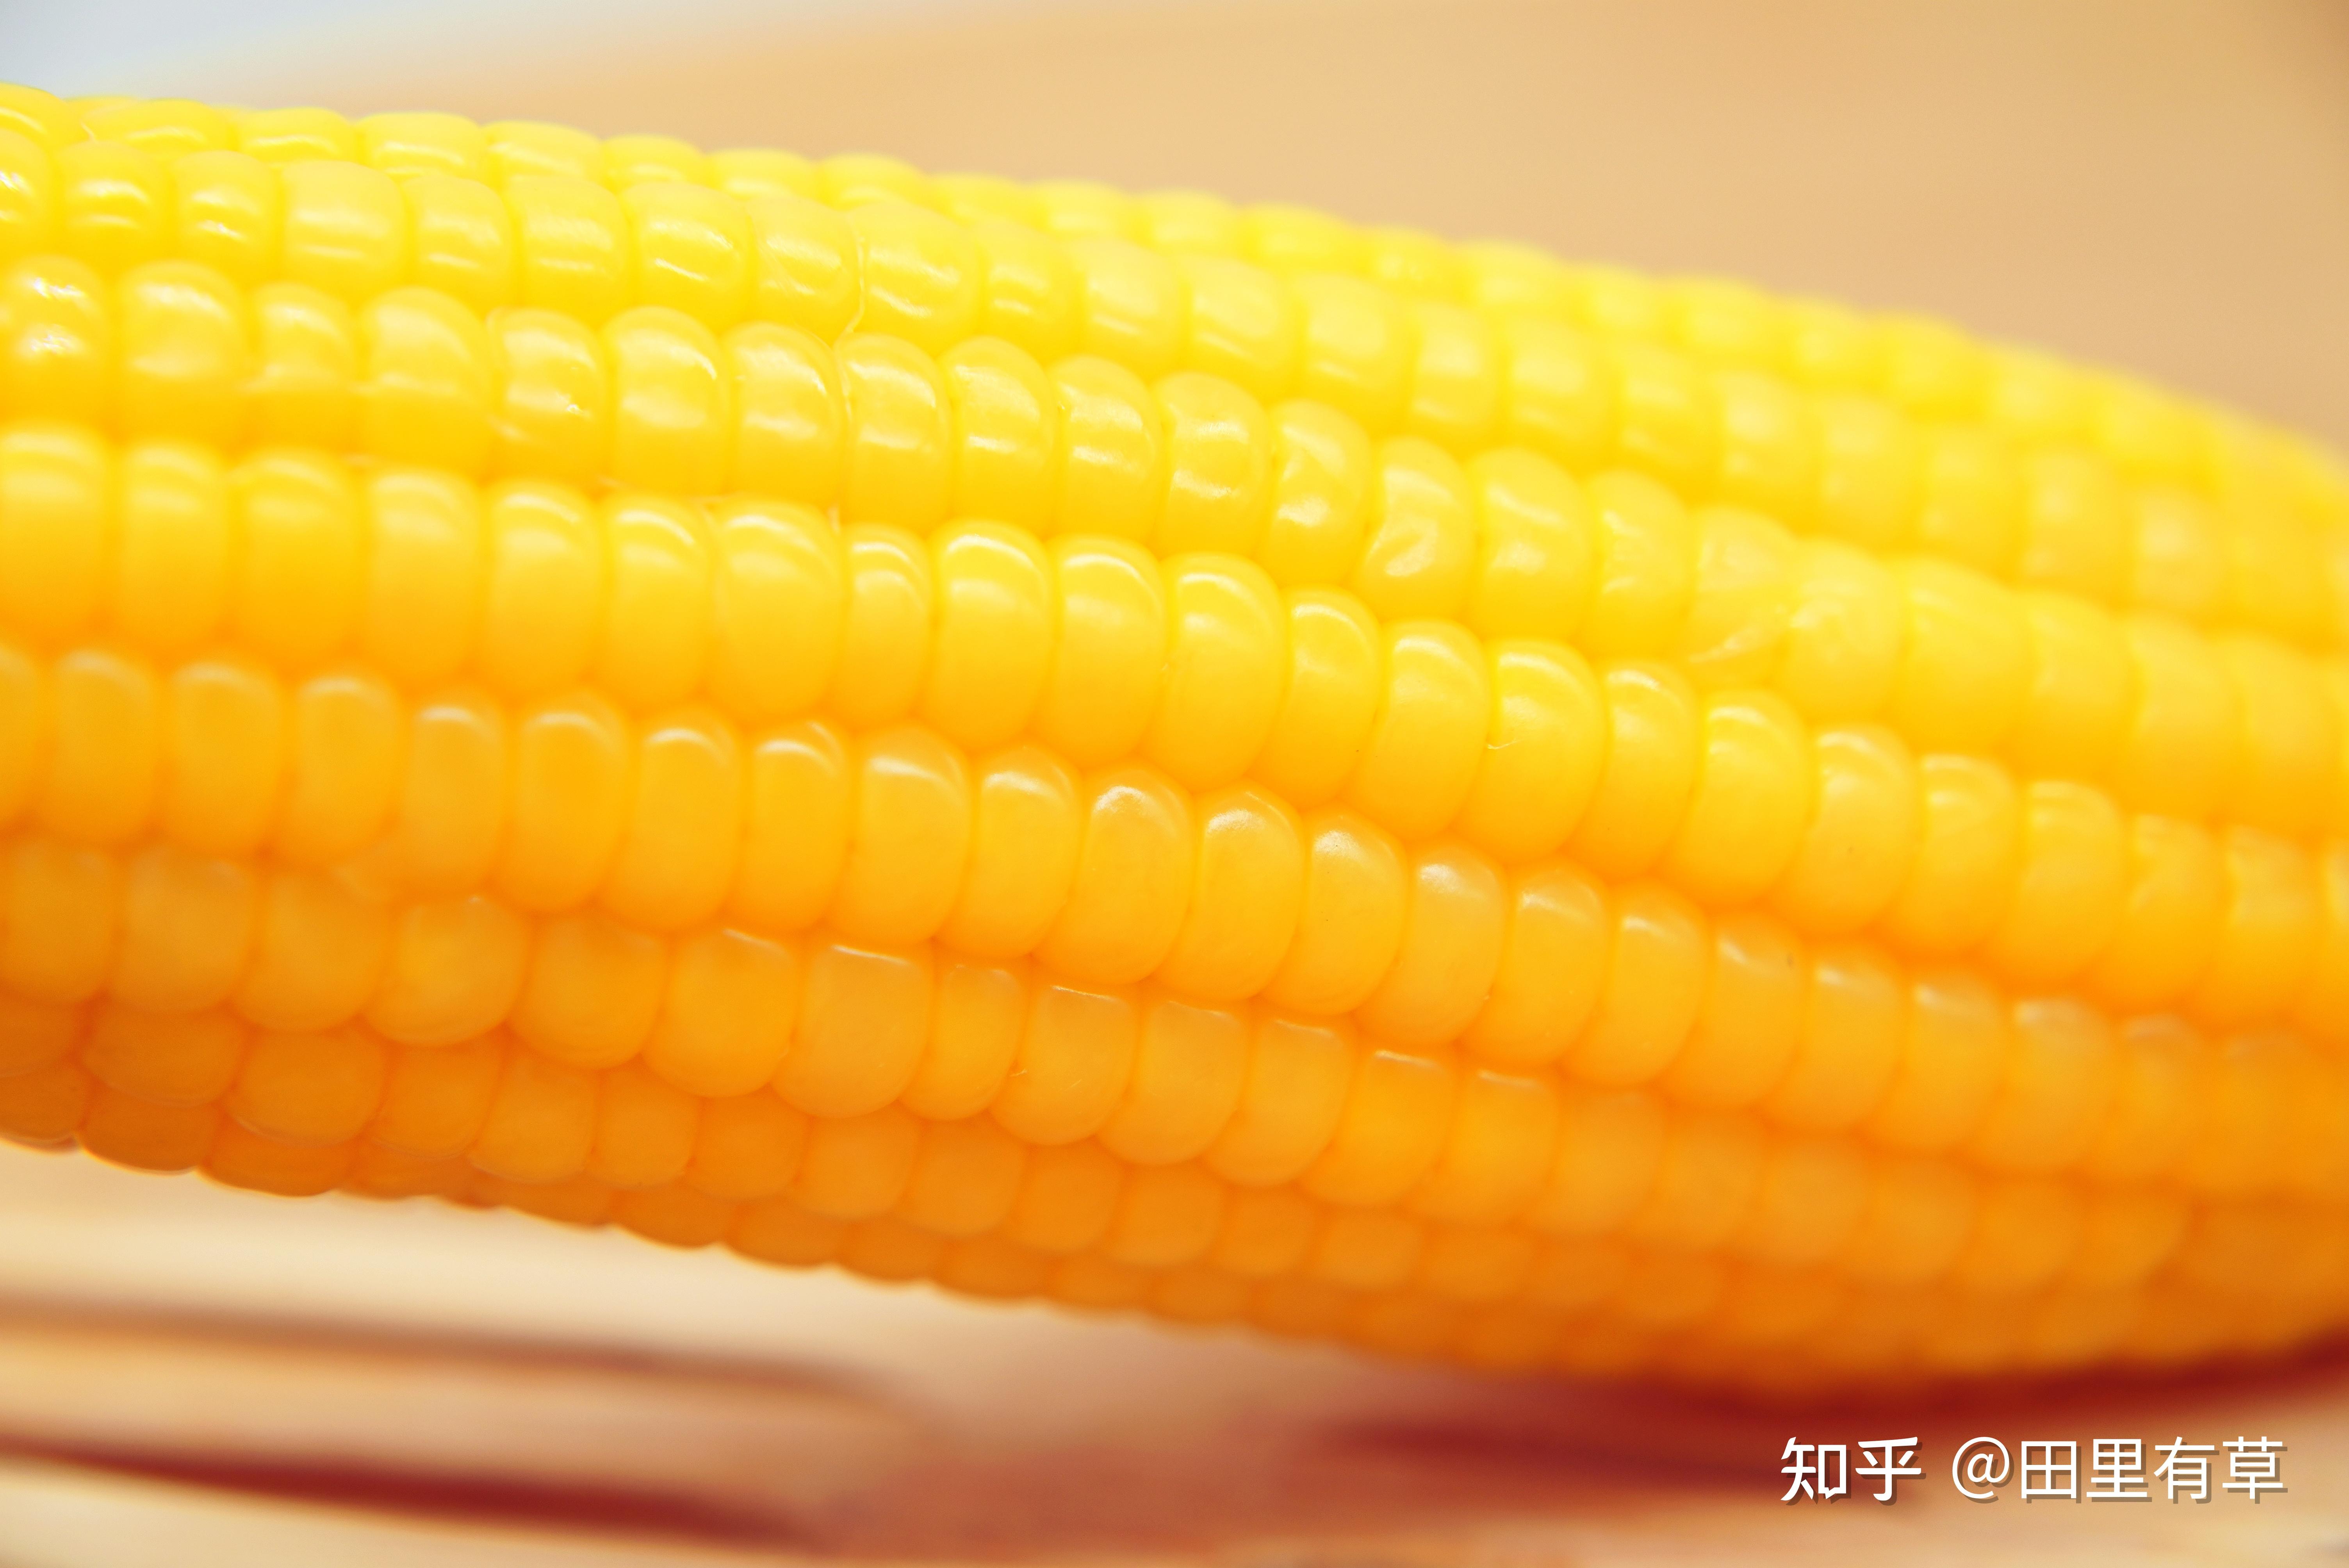 如何分辨玉米的种类？玉米又该怎么煮？【食材区分】 - 知乎